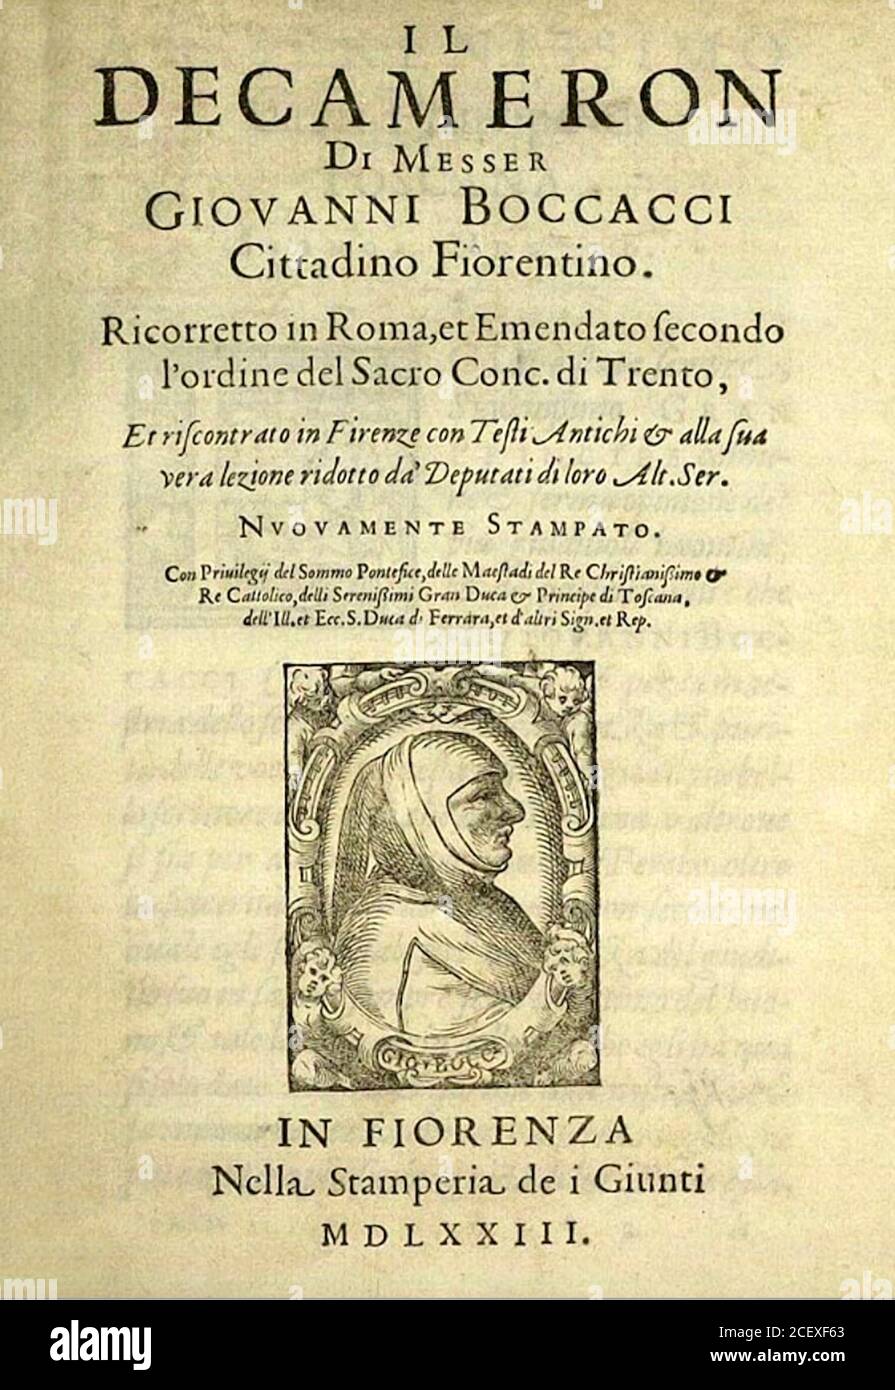 Decameron. Titelblatt einer Ausgabe des Decameron von Giovanni Boccacci aus dem Jahr 1573. Stockfoto